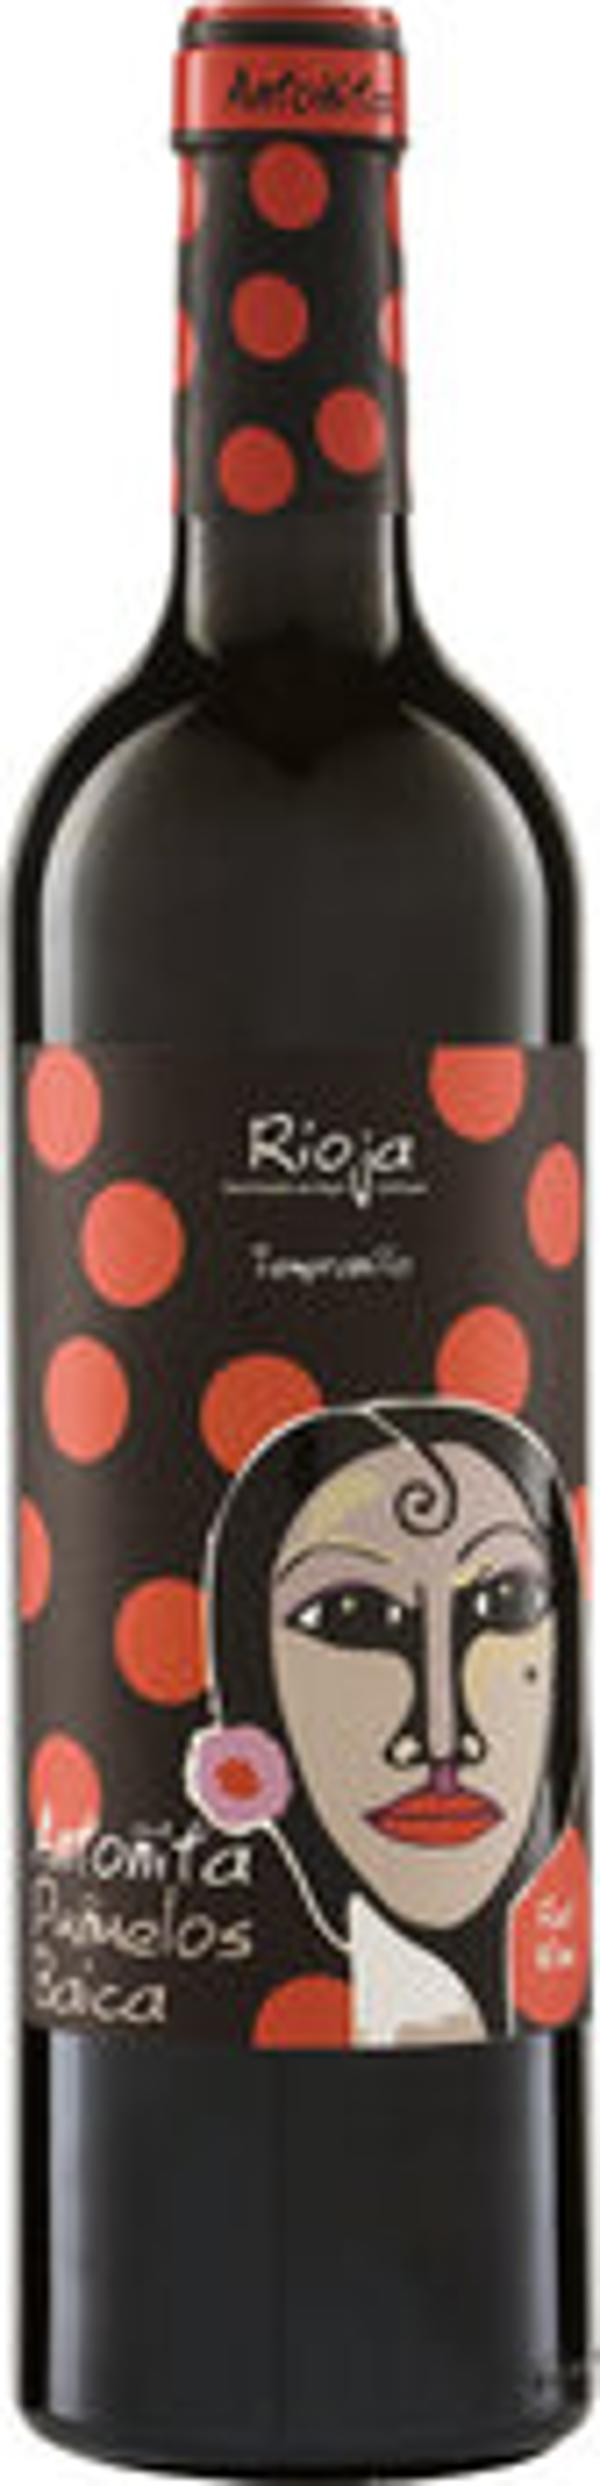 Produktfoto zu Rioja Tempranillo Antonita Punuelos Baica, 0,75 l